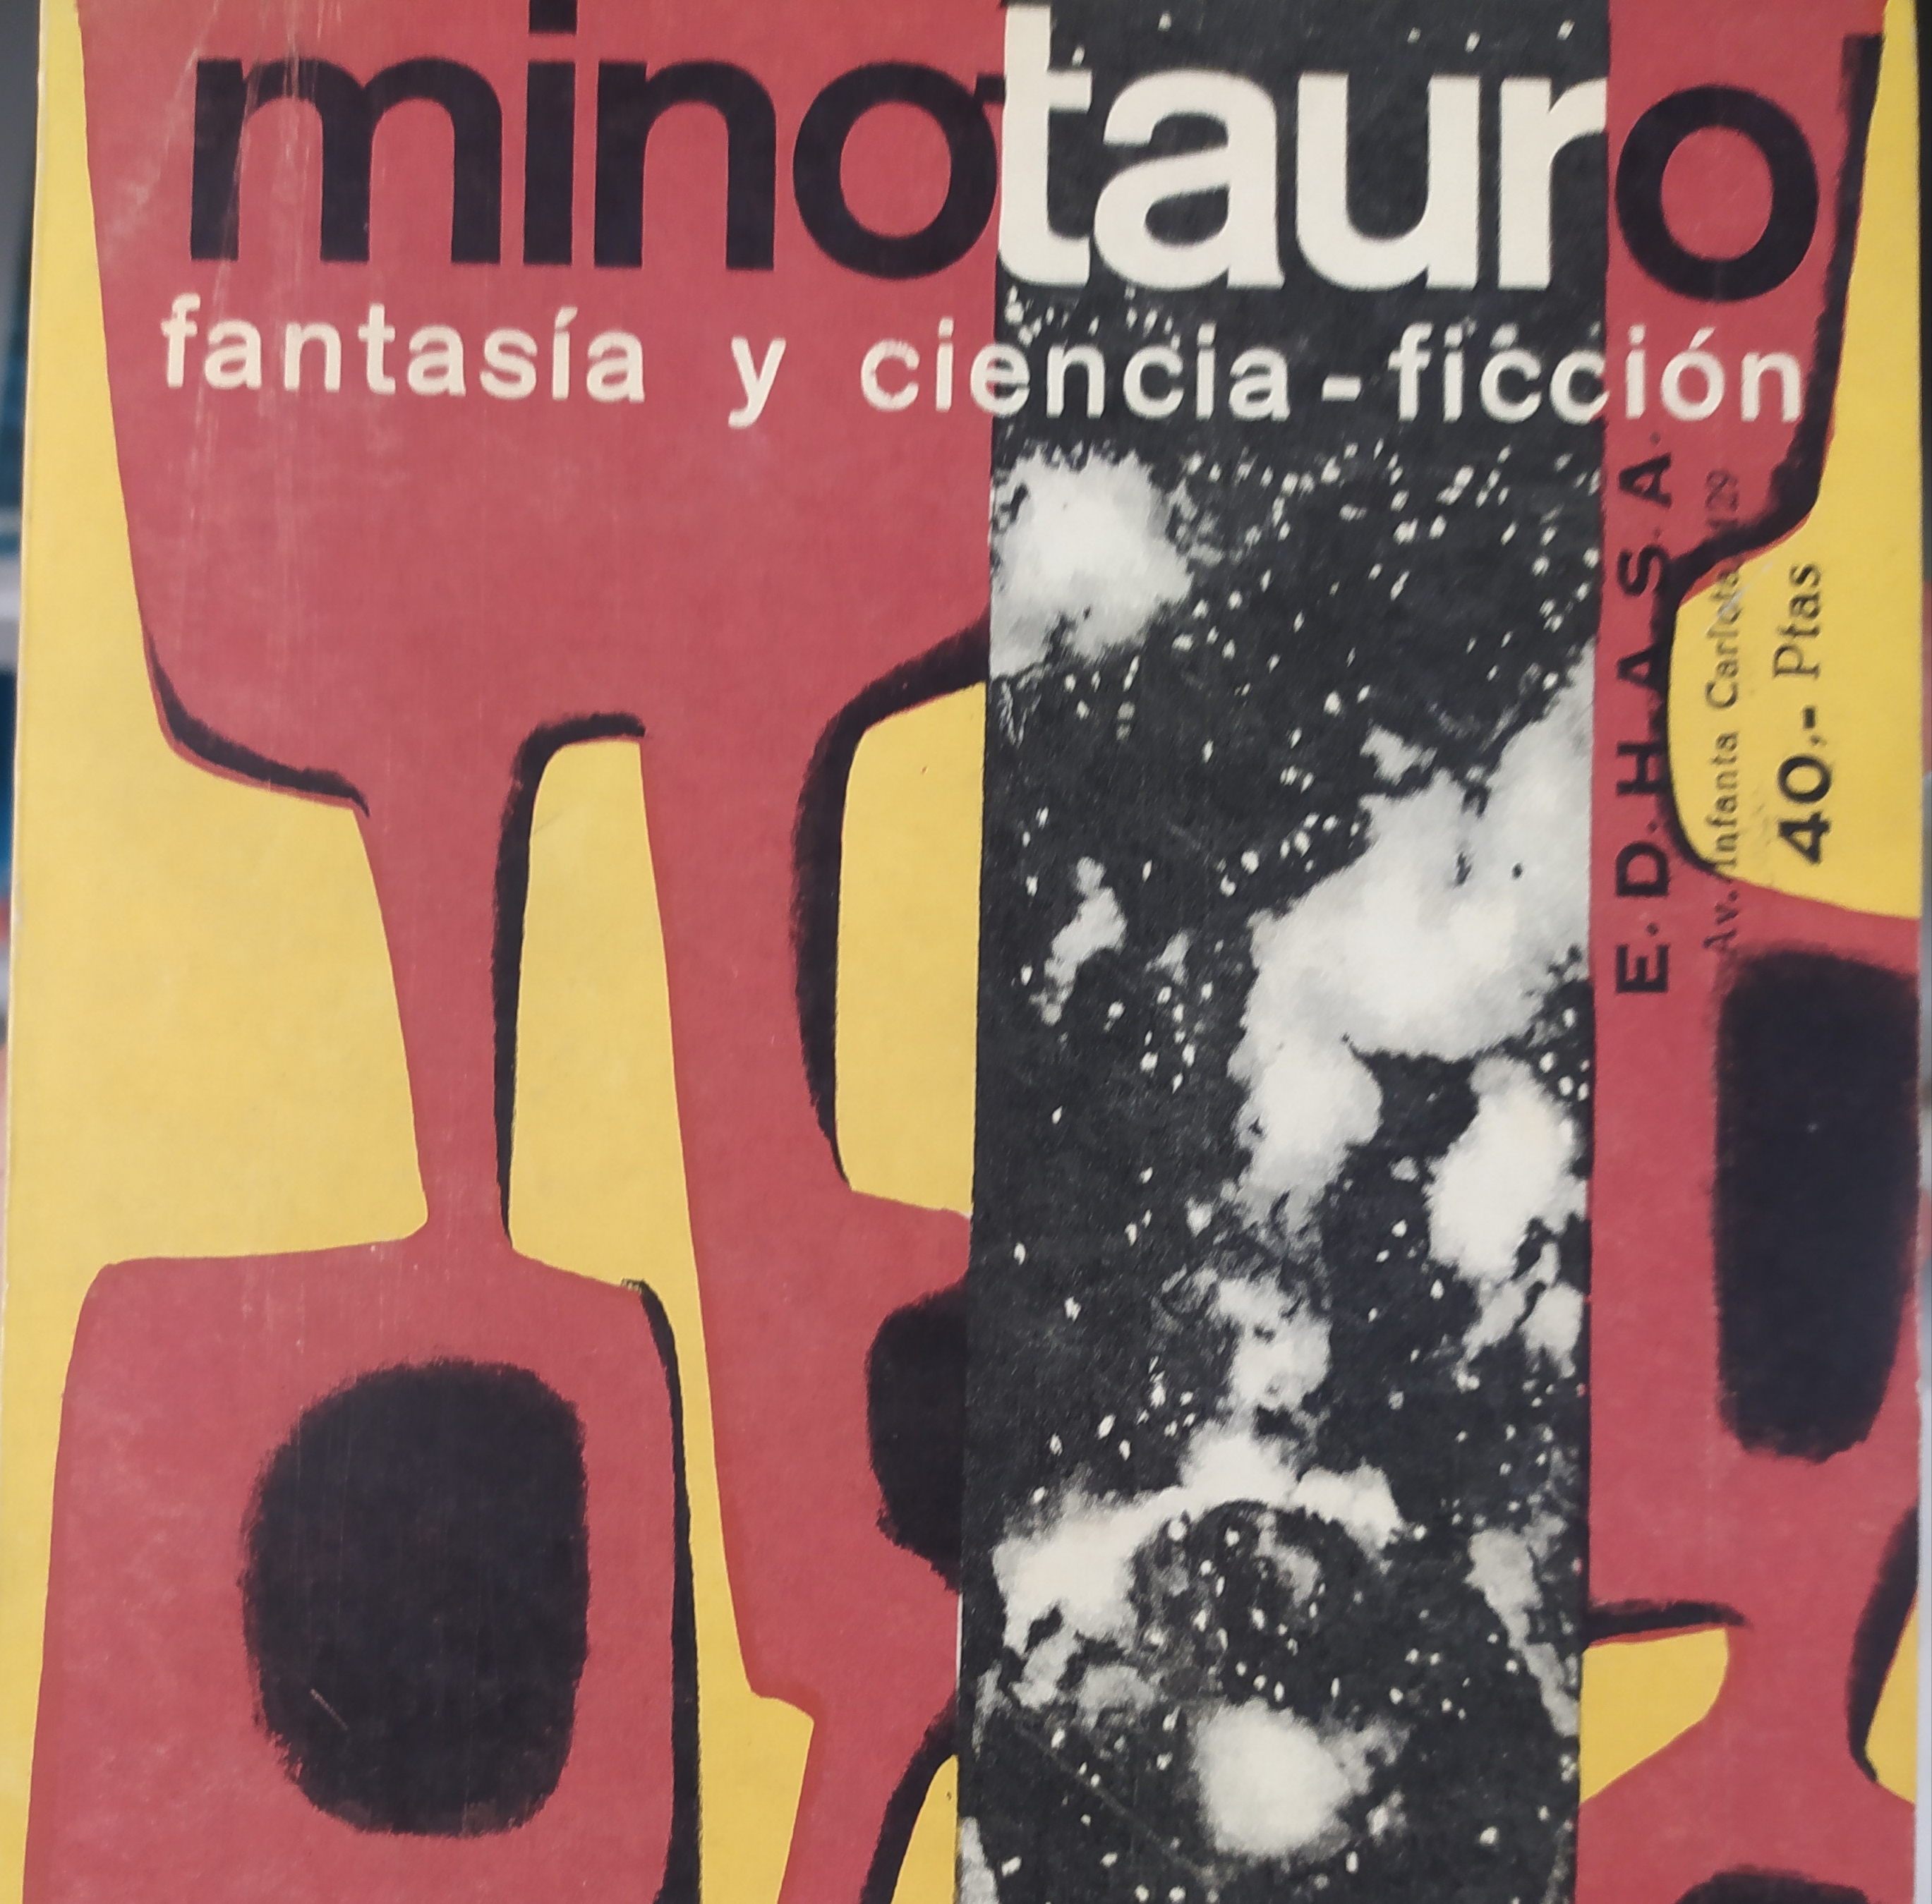 Francisco Porrúa y Ediciones Minotauro: el editor y su sello de ciencia ficción